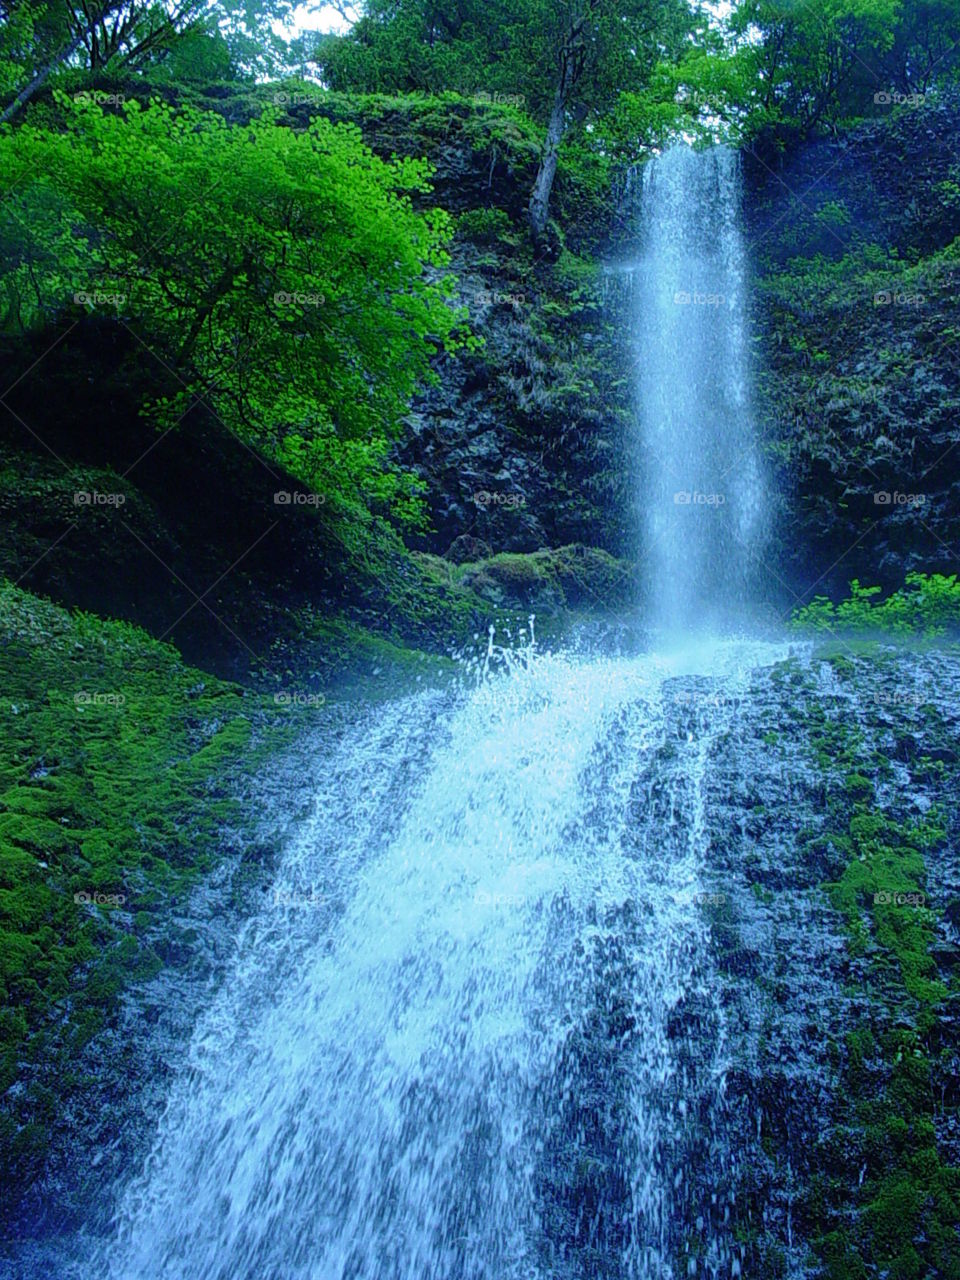 Oregon falls